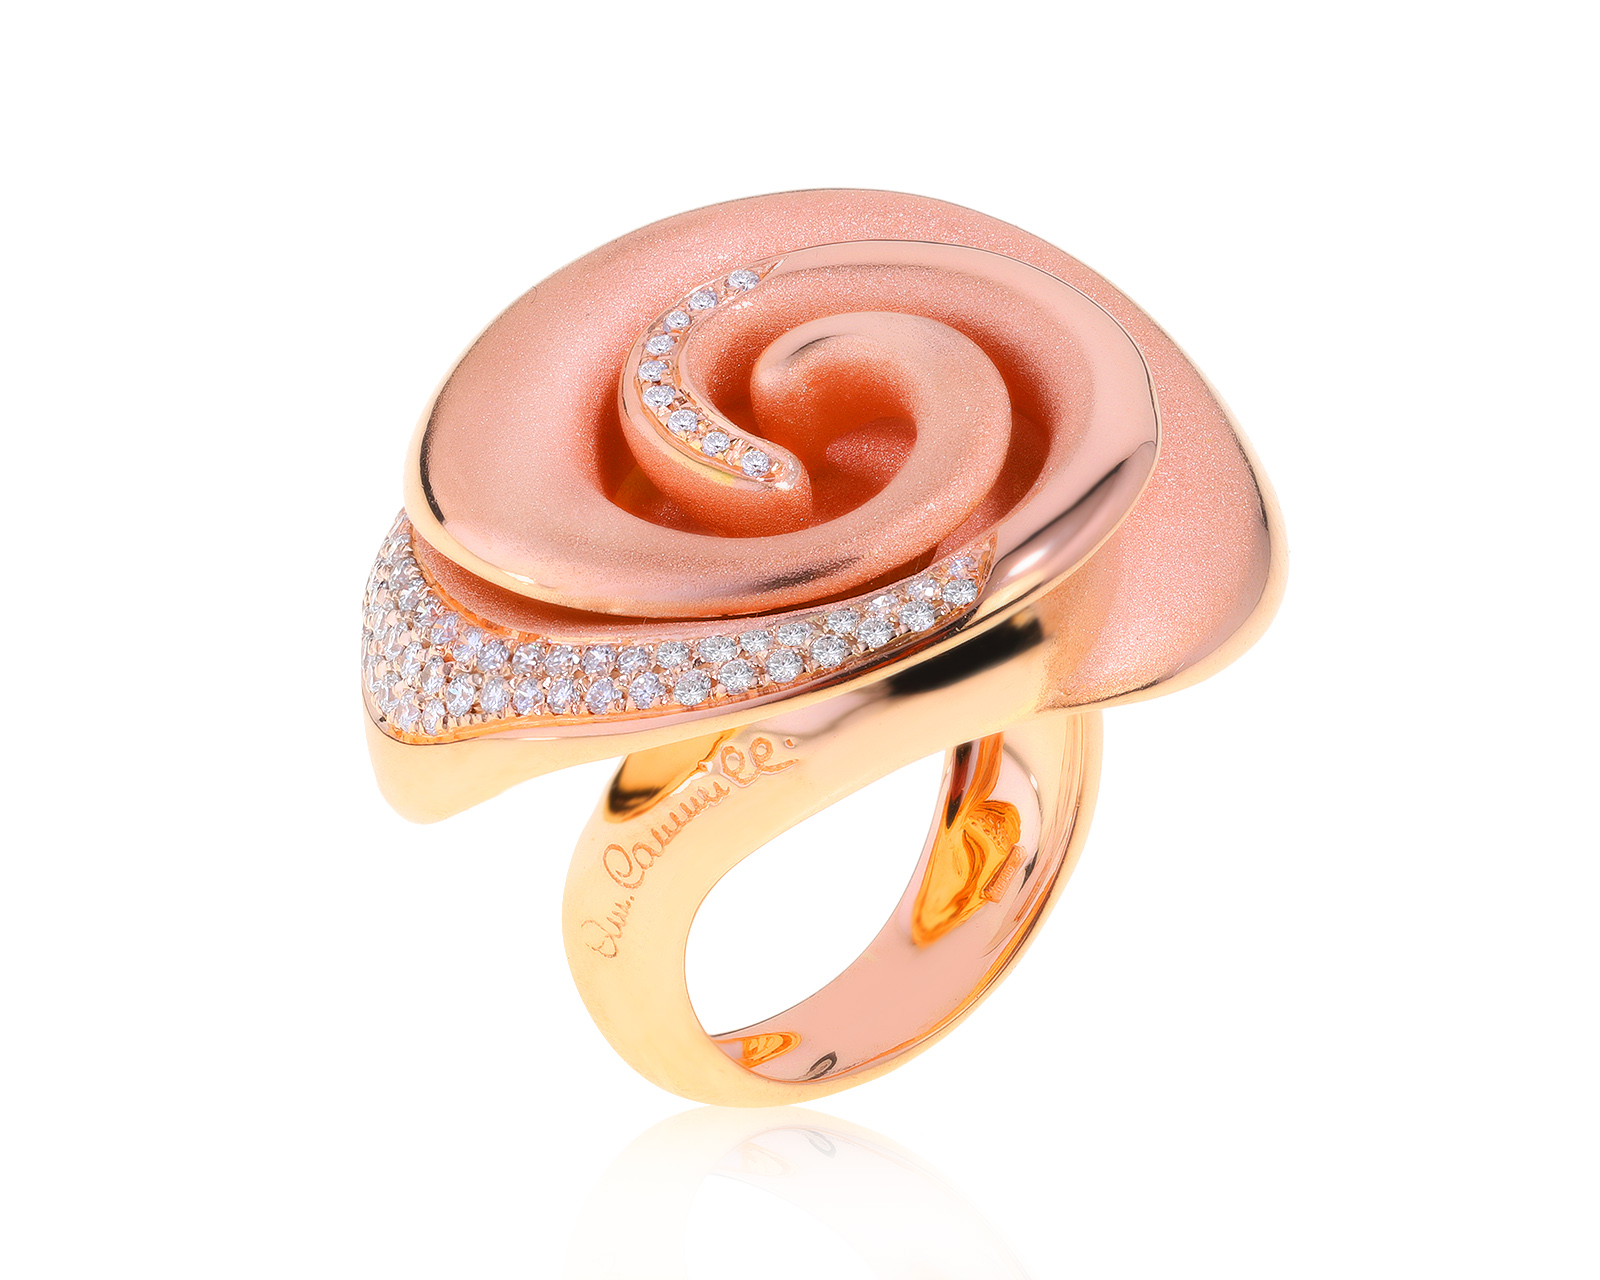 Оригинальное золотое кольцо с бриллиантами Annamaria Cammilli 271221/2